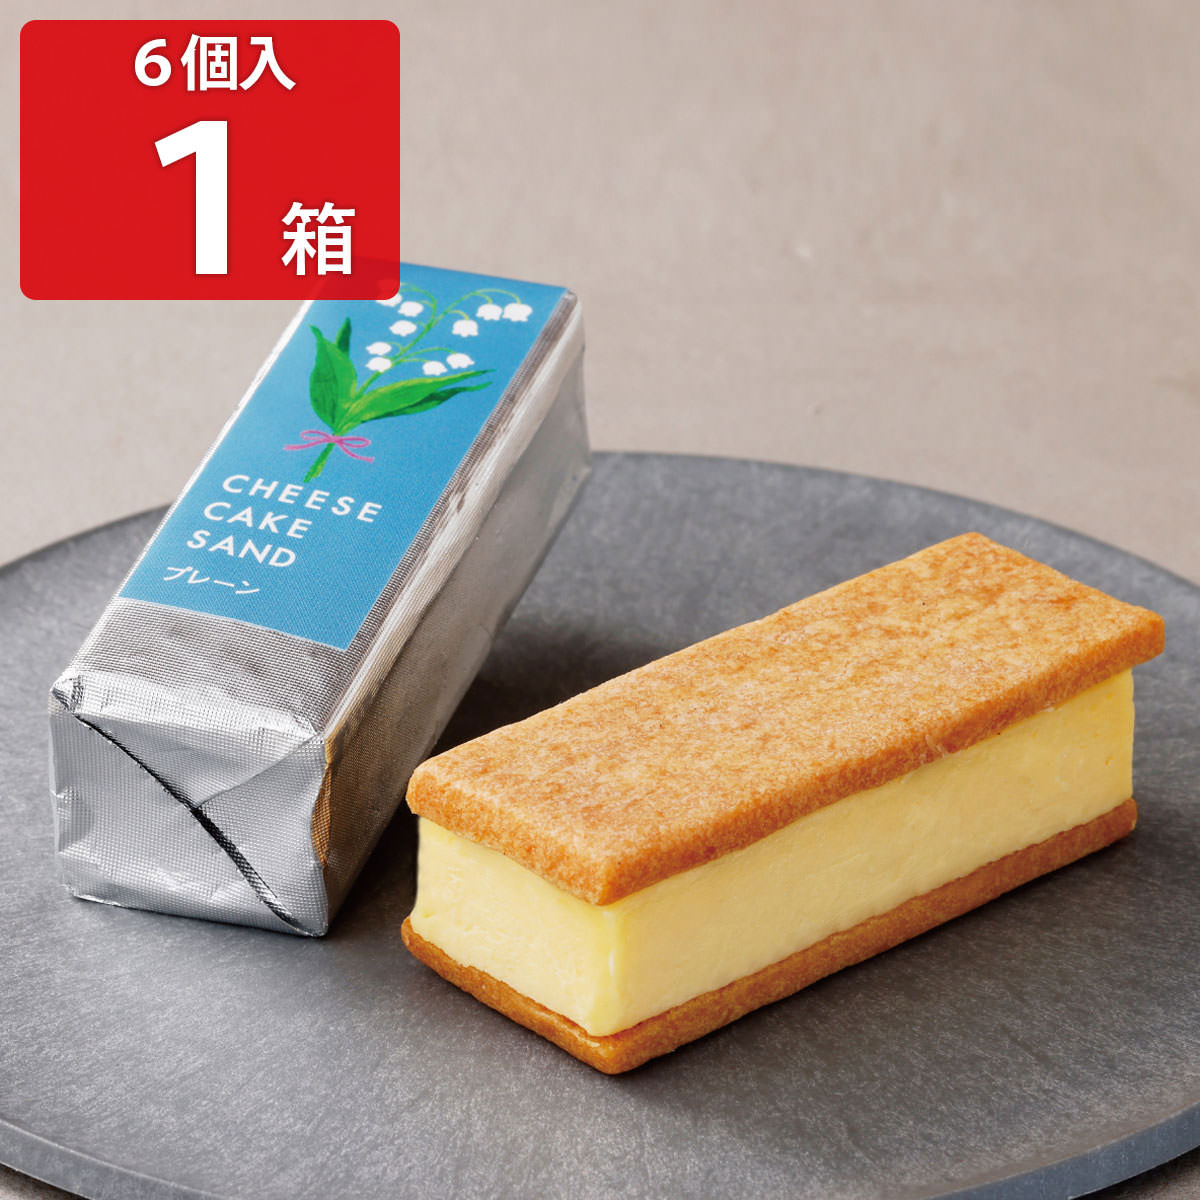 チーズケーキサンド -CHEESECAKE SAND- プレーン 6個入 クッキーサンド 洋菓子 ス ...